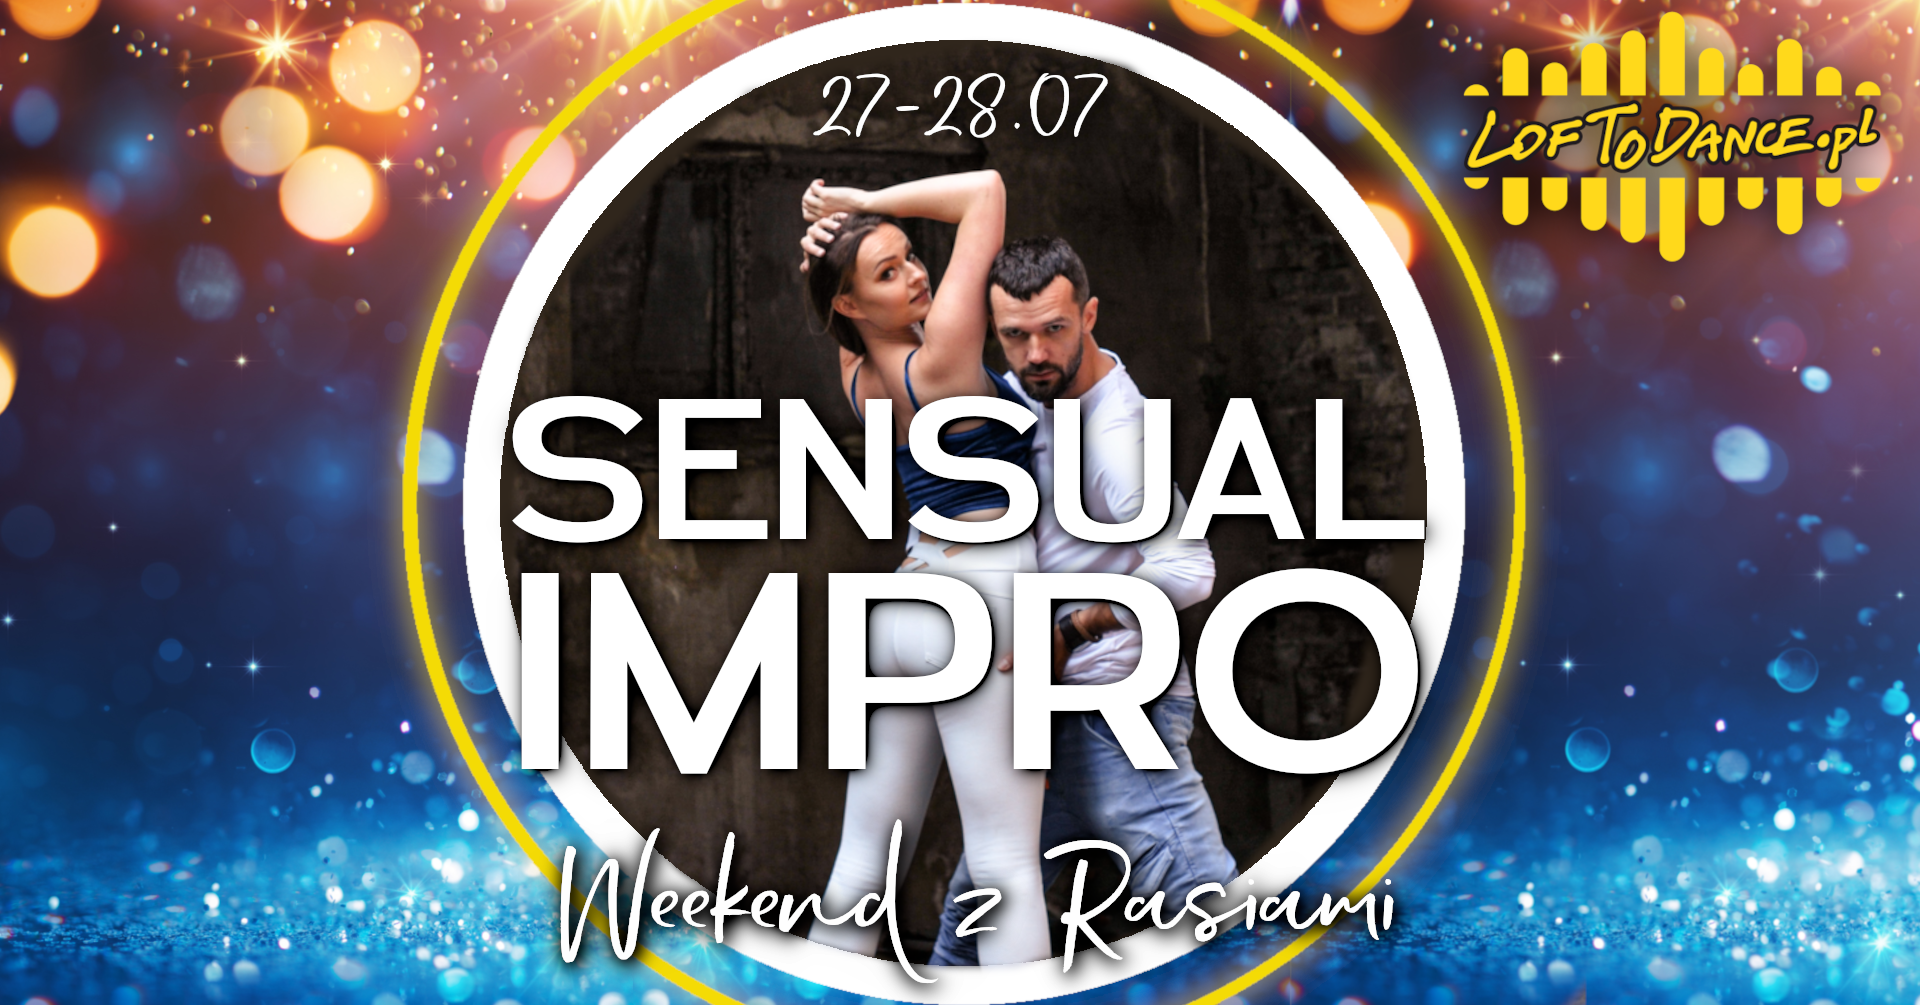 Sensual Impro Weekend - sklep Loftodance